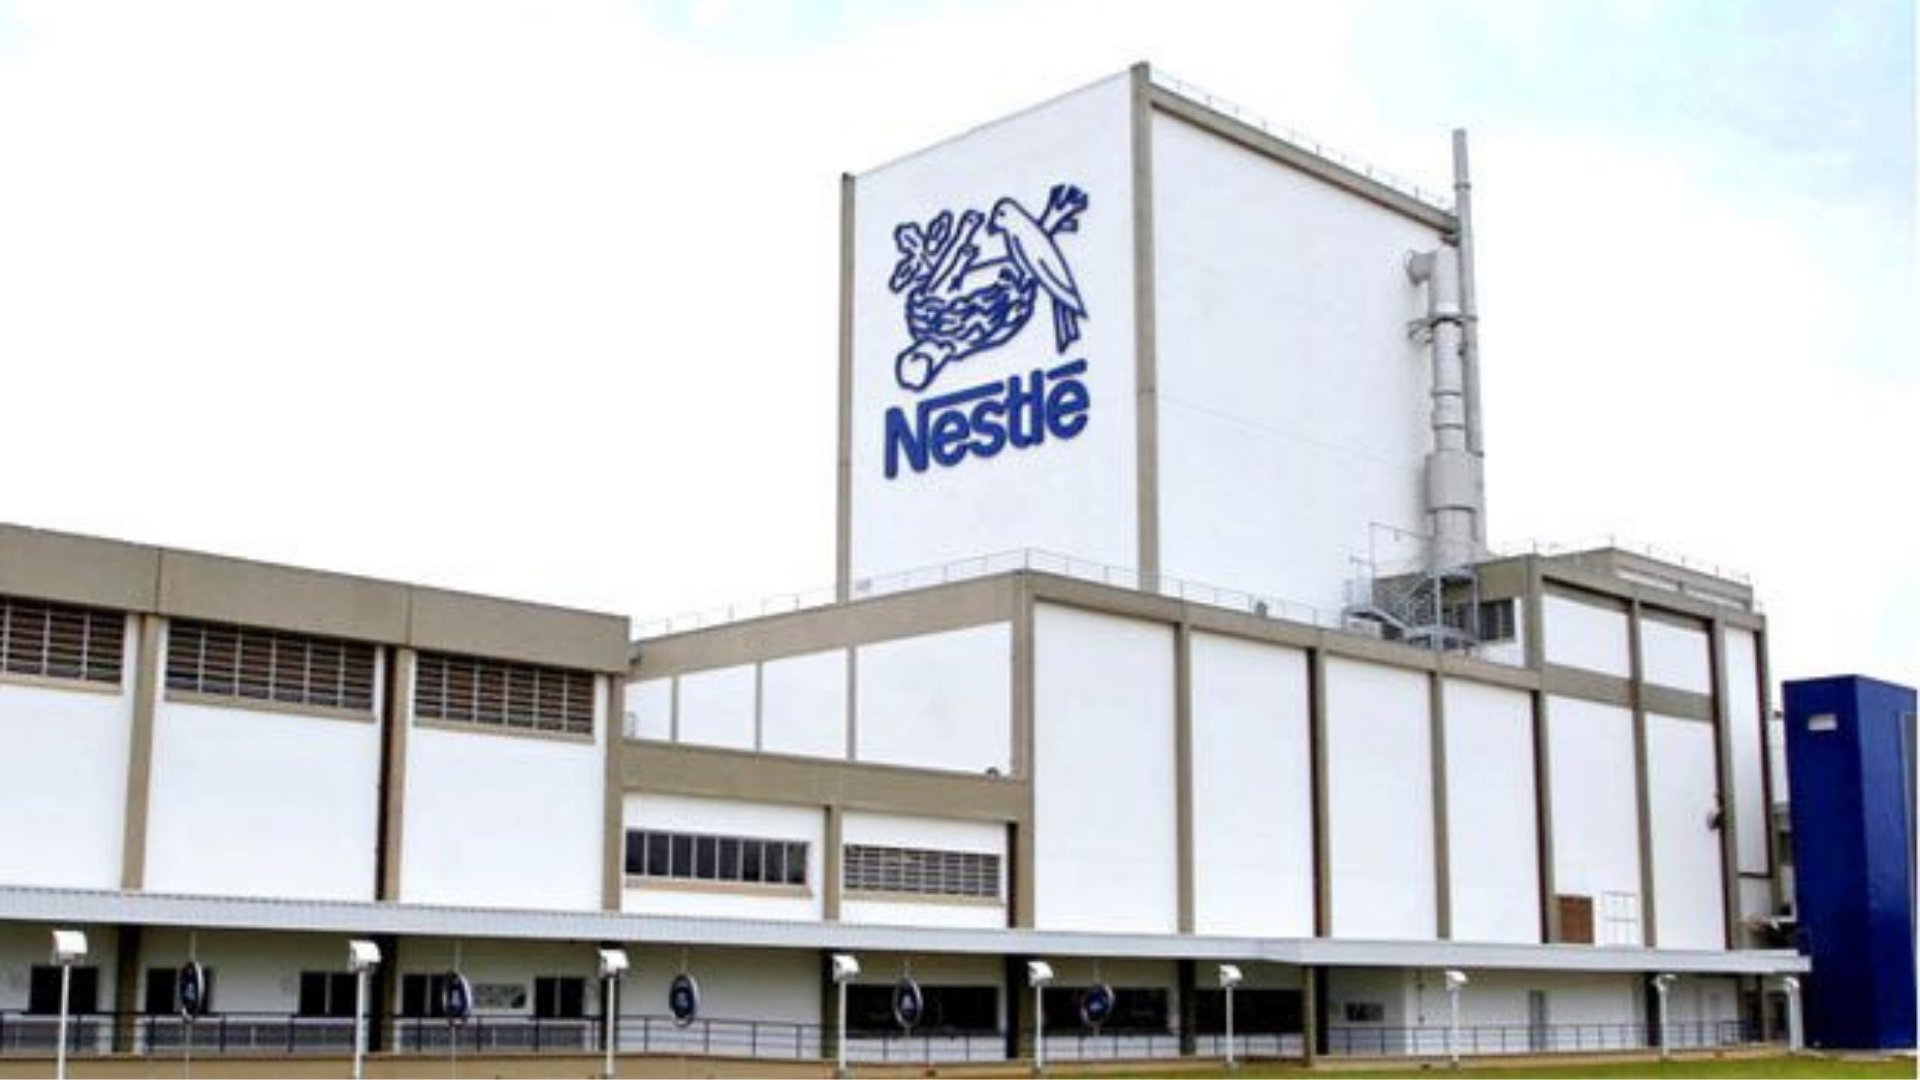 Fábrica – Nestlé – Santa Catarina – construção - empregos